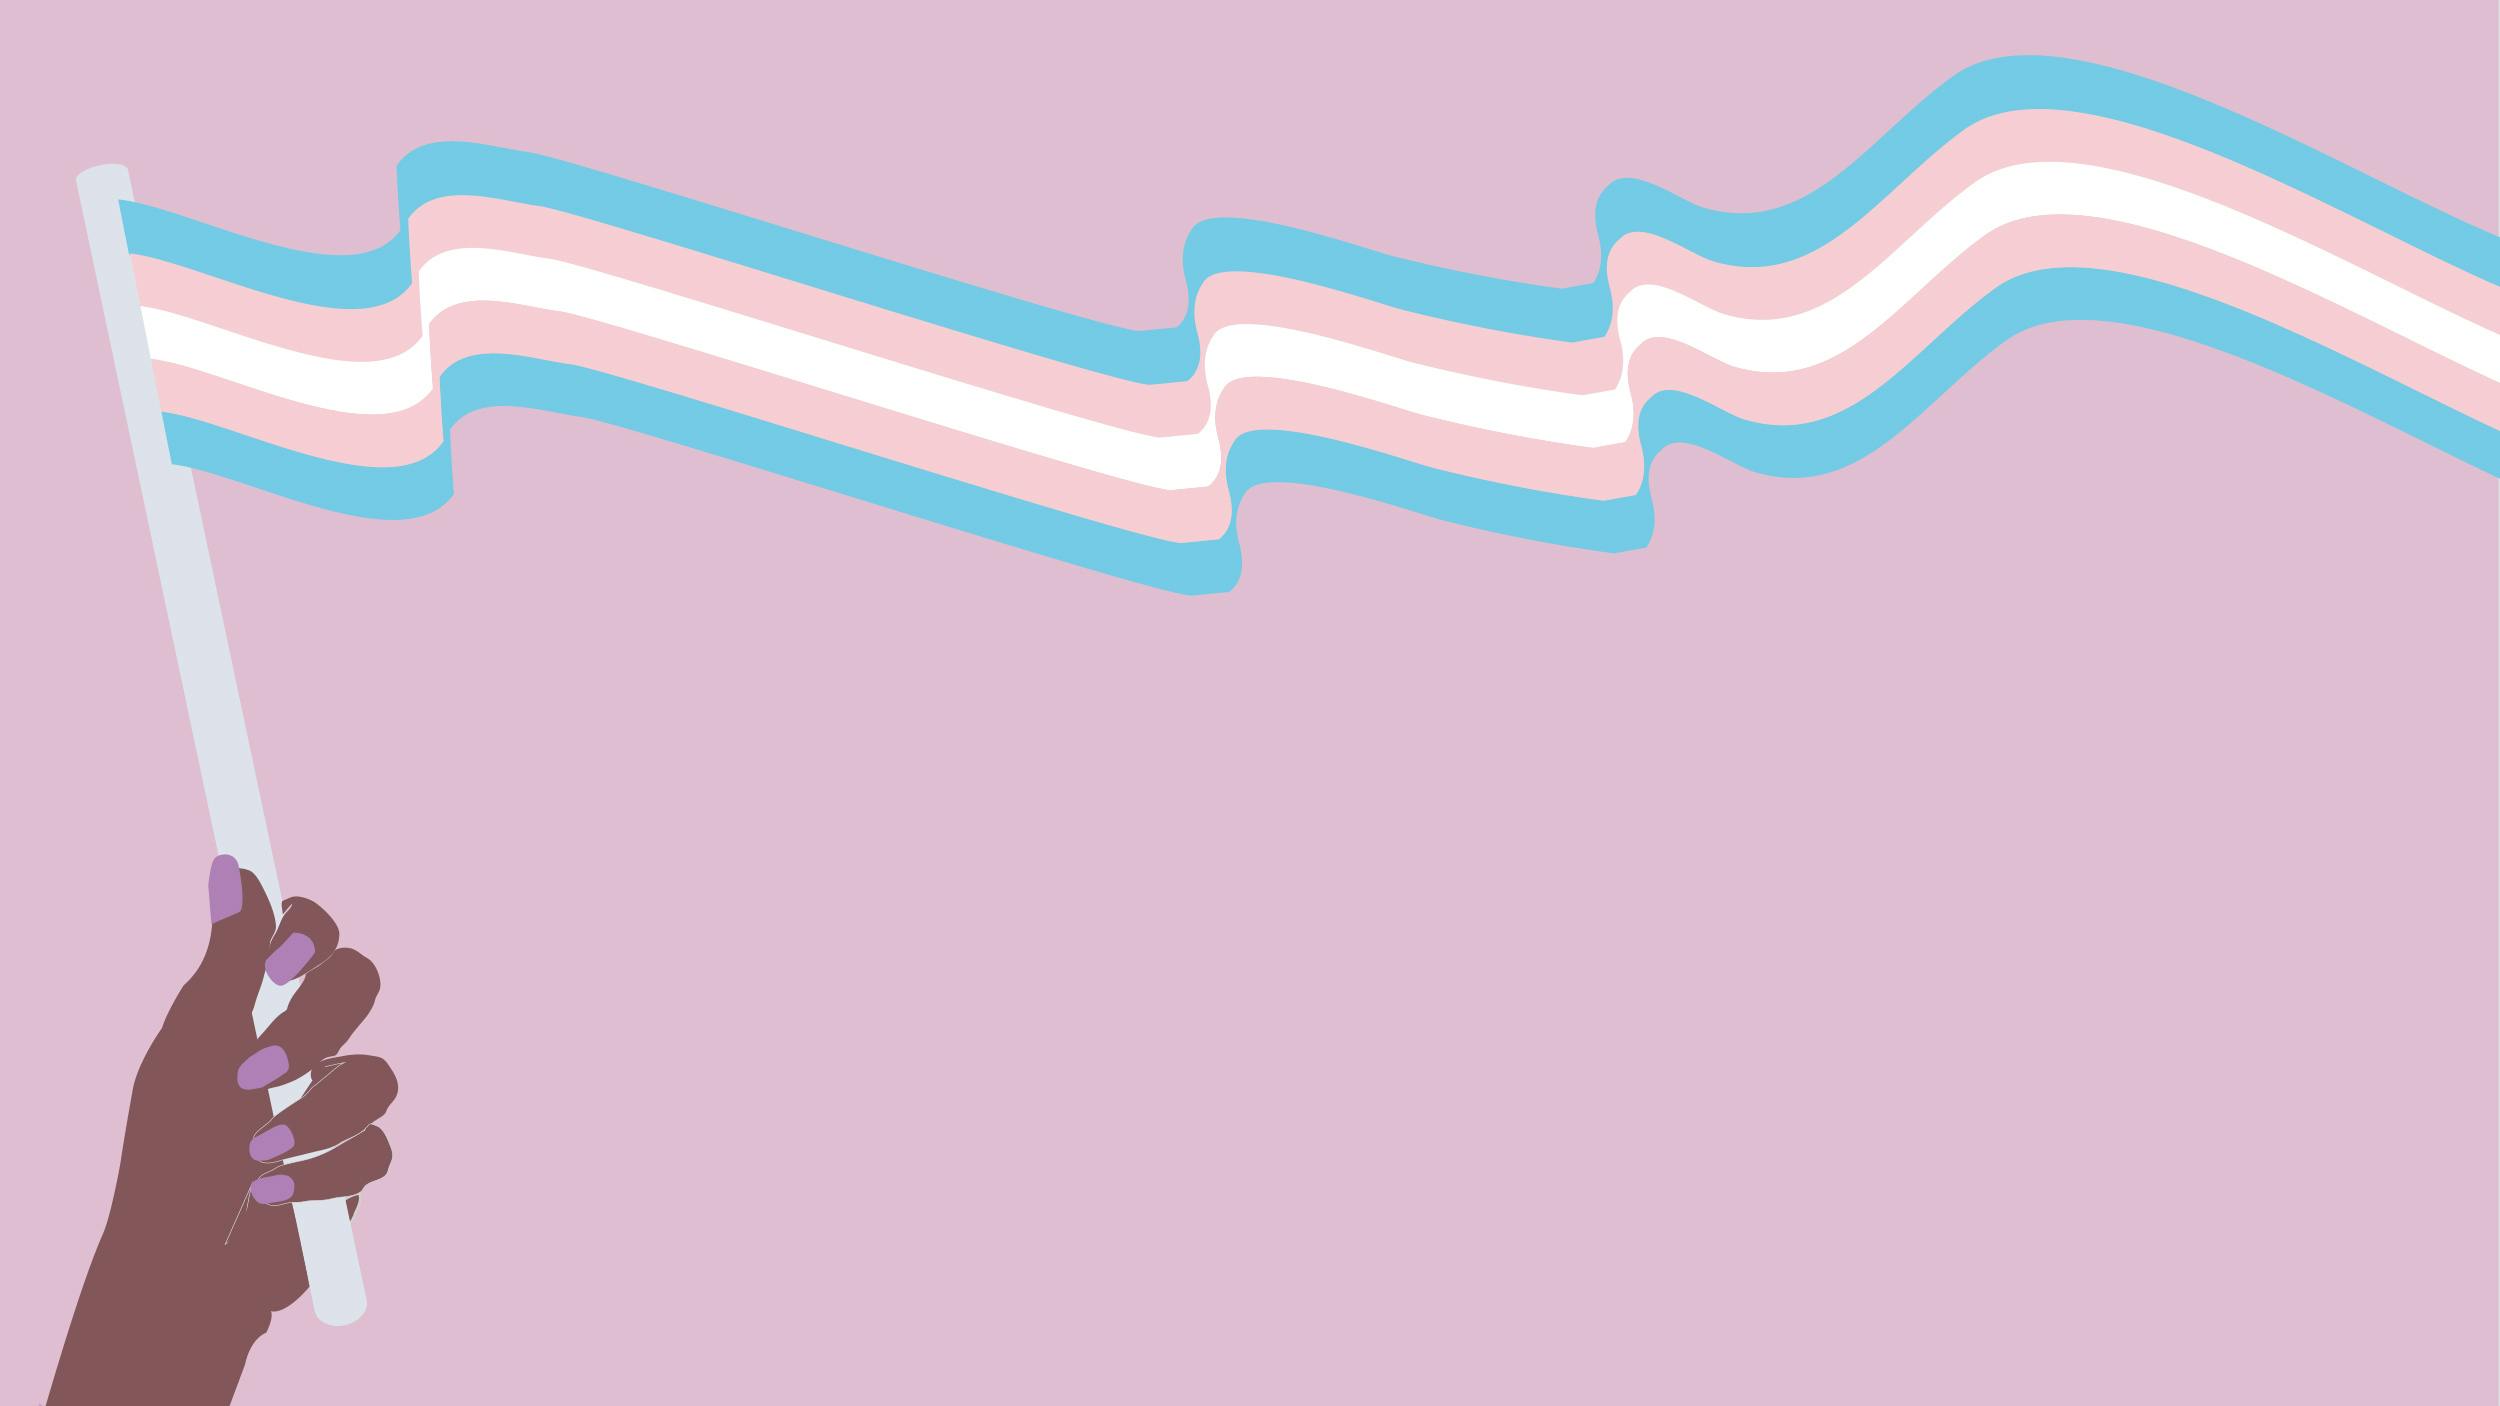 Illustration: Eine schwarze Hand hält eine Trans-Flagge. Sie ist blau-rosa-weiß gestreift. Der Hintergrund ist rosa.